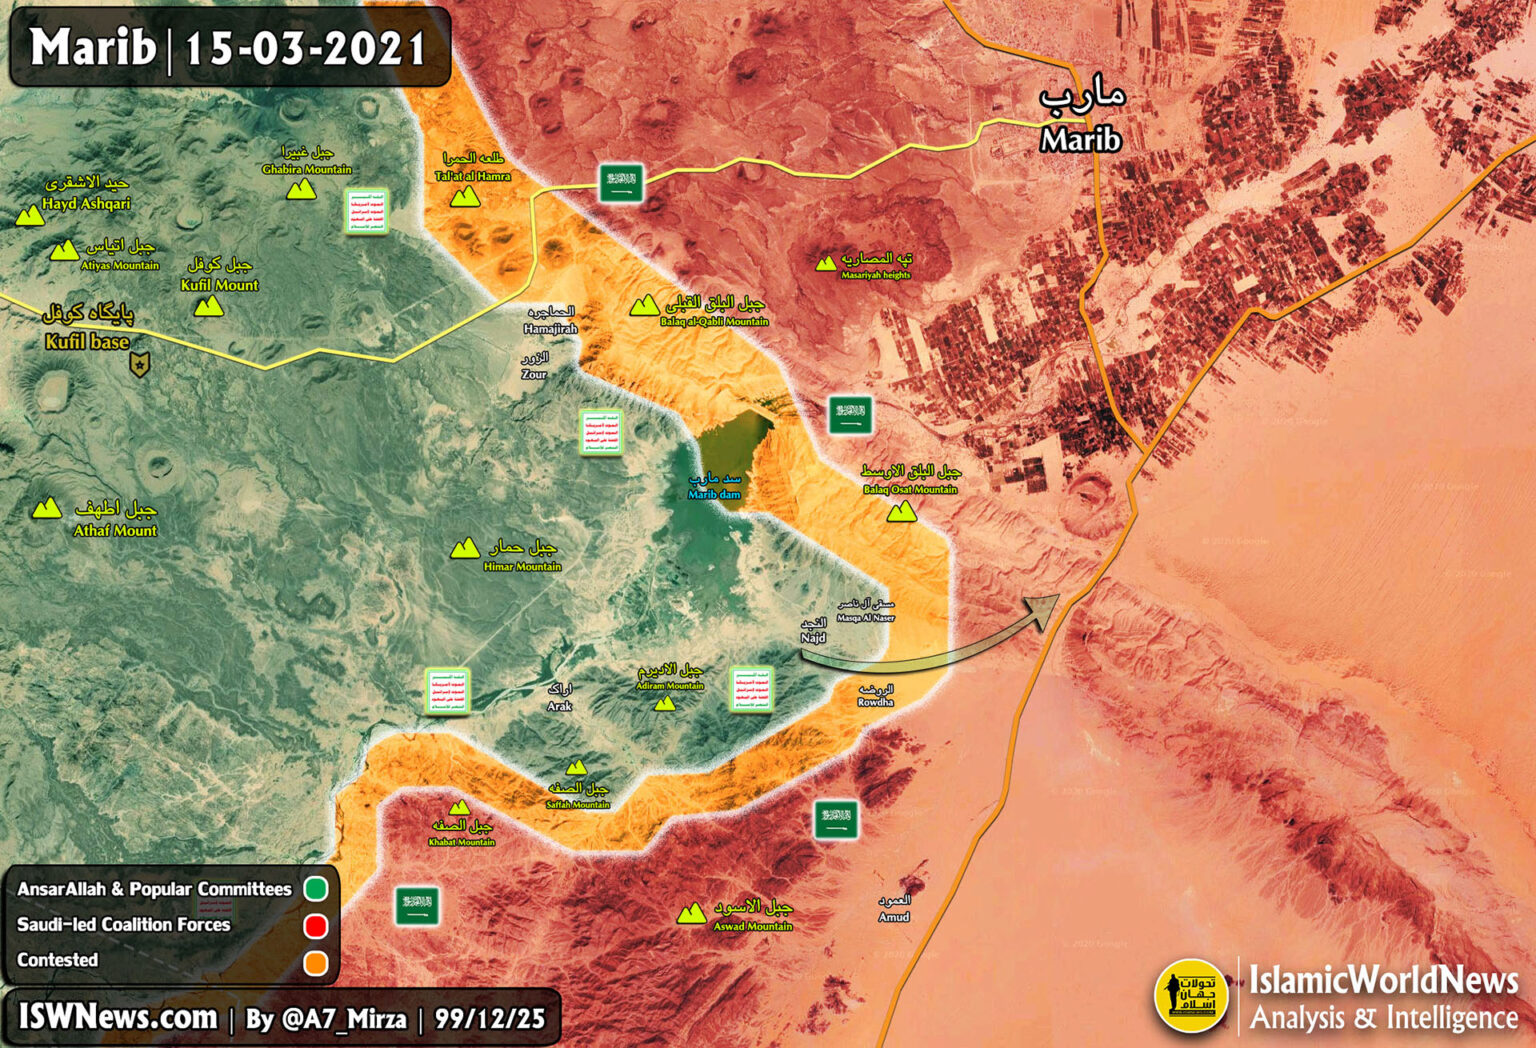 Marib Map 15march2021 Copy 1536x1048 